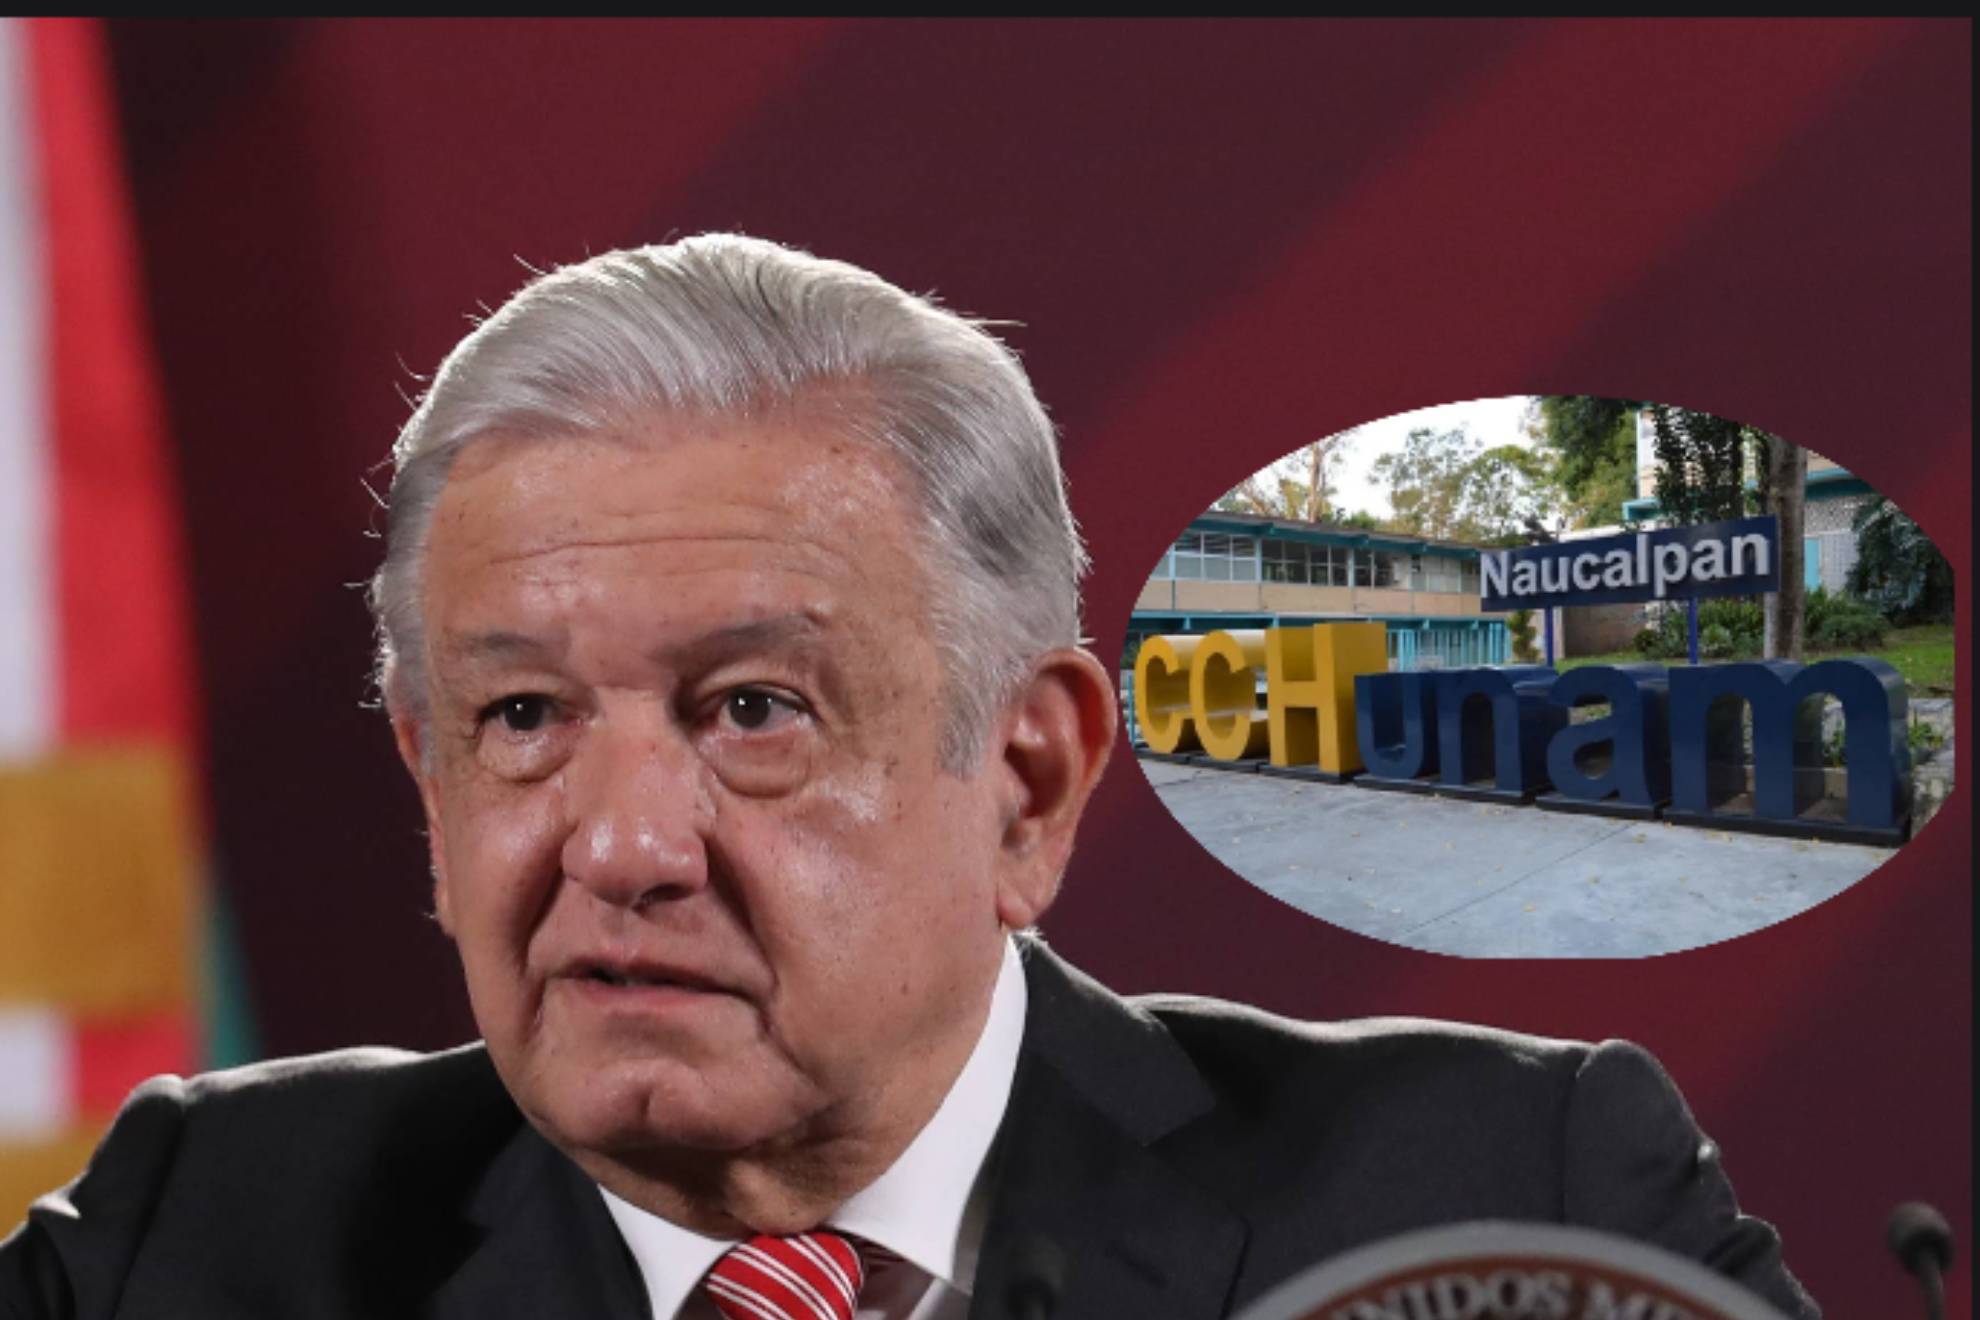 El presidente Andrs Manuel Lpez Obrador habl de lo ocurrido en el CCH Naucalpan, Edomex